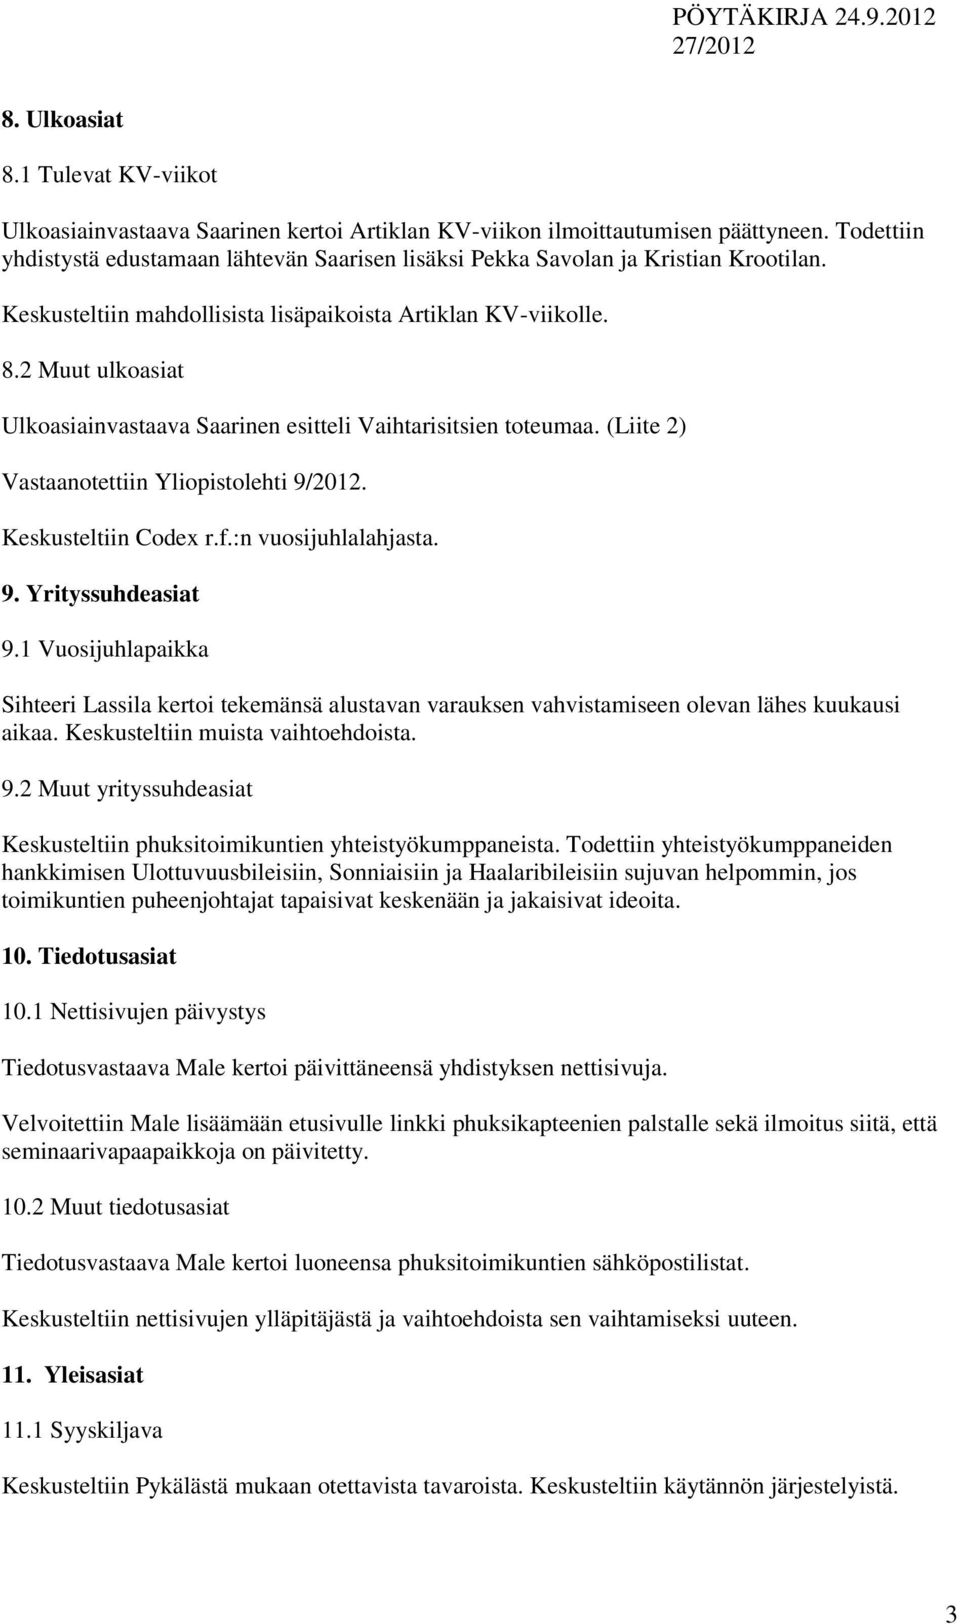 2 Muut ulkoasiat Ulkoasiainvastaava Saarinen esitteli Vaihtarisitsien toteumaa. (Liite 2) Vastaanotettiin Yliopistolehti 9/2012. Keskusteltiin Codex r.f.:n vuosijuhlalahjasta. 9. Yrityssuhdeasiat 9.